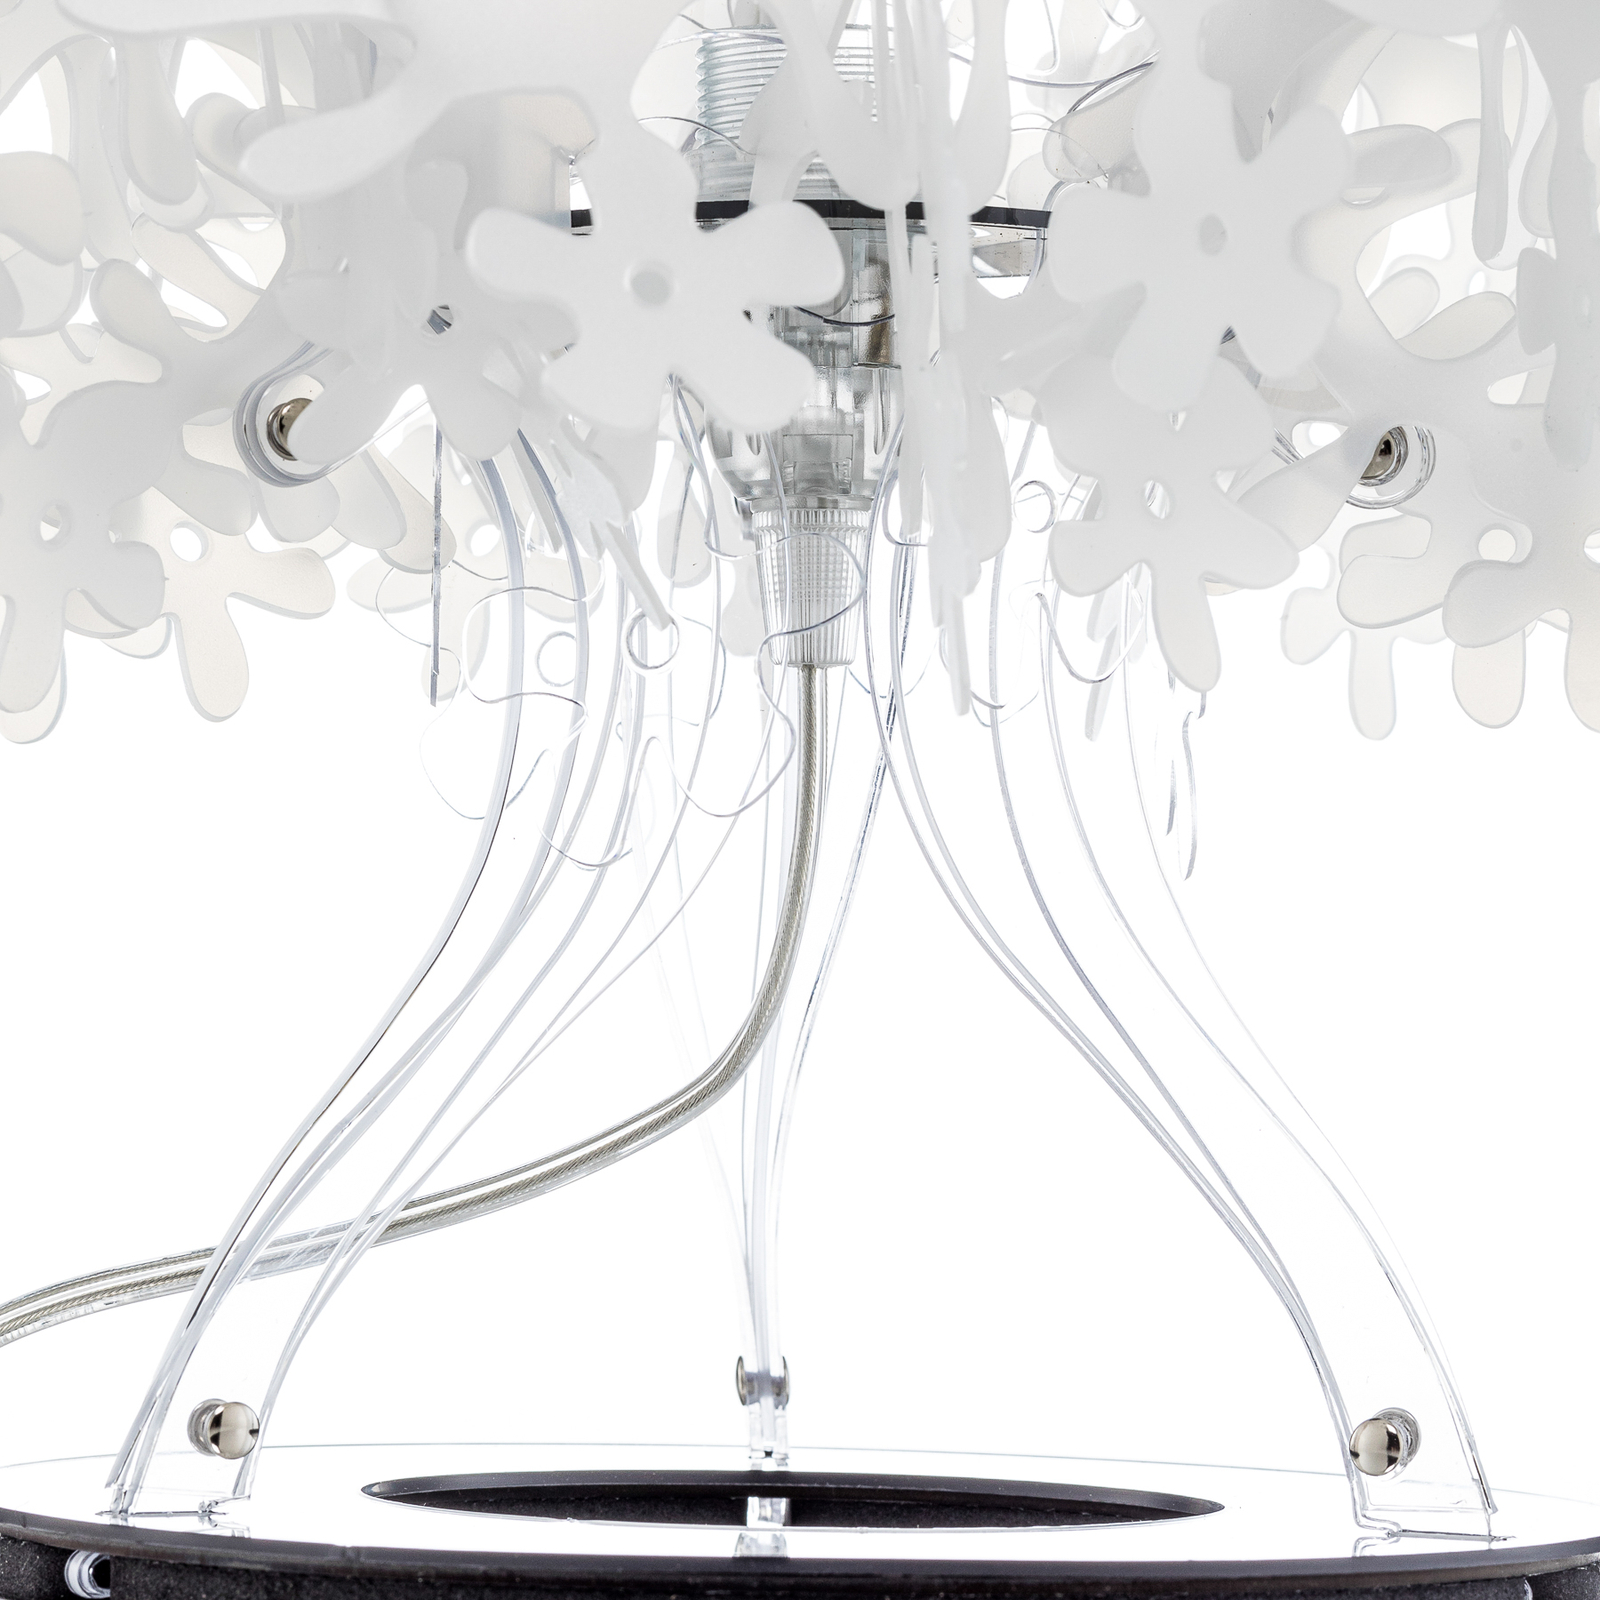 Slamp Fiorella - designová stolní lampa